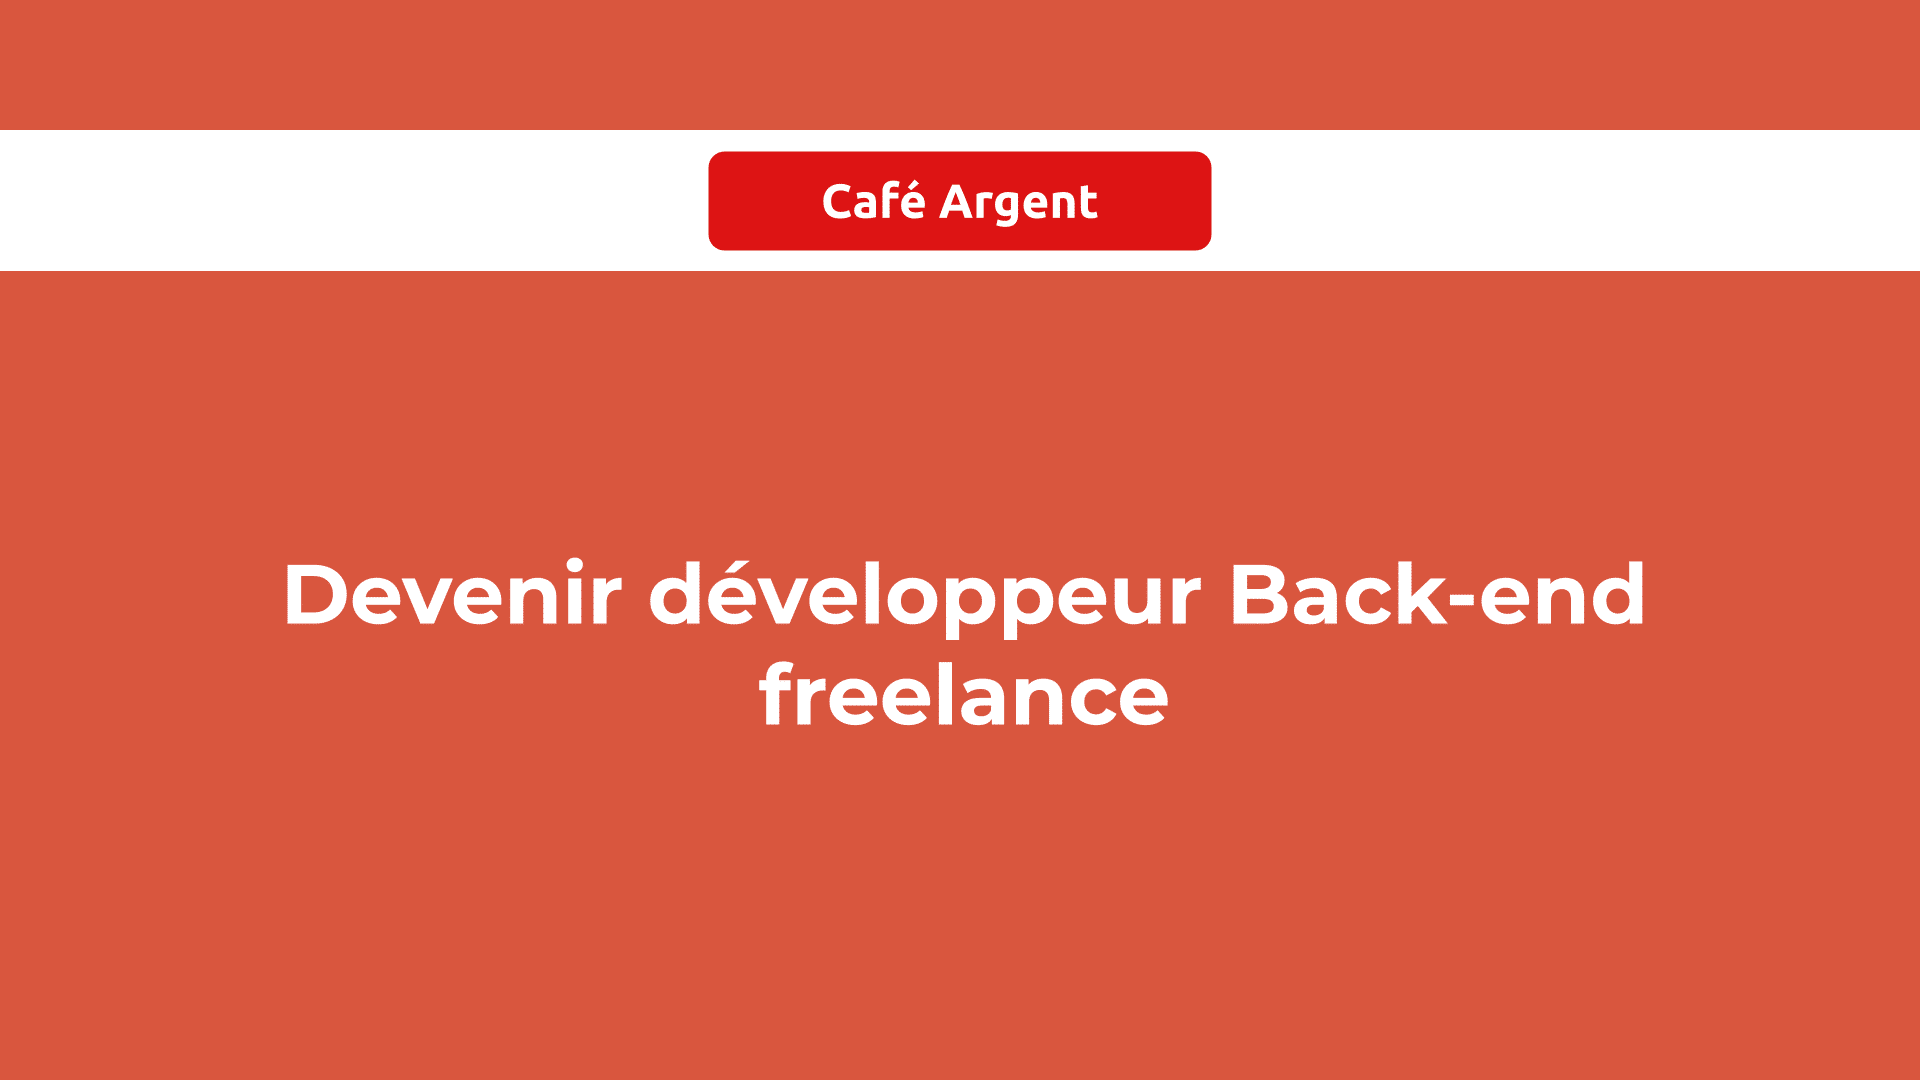 Devenir développeur Back-end freelance